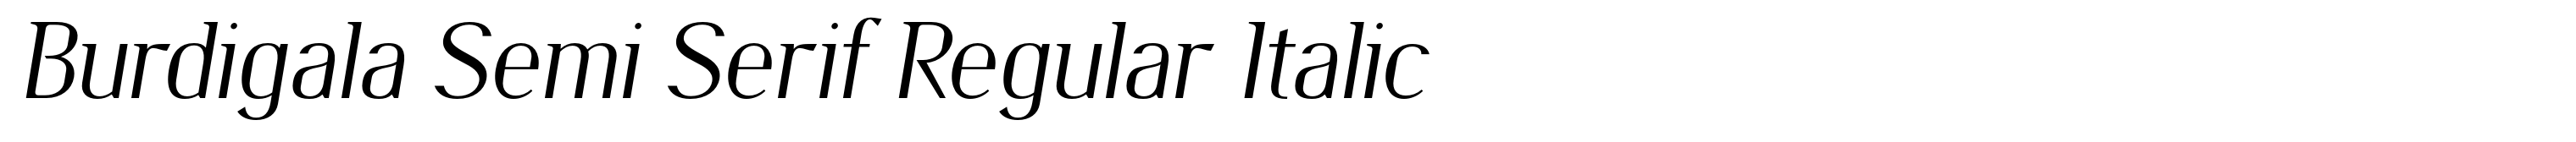 Burdigala Semi Serif Regular Italic